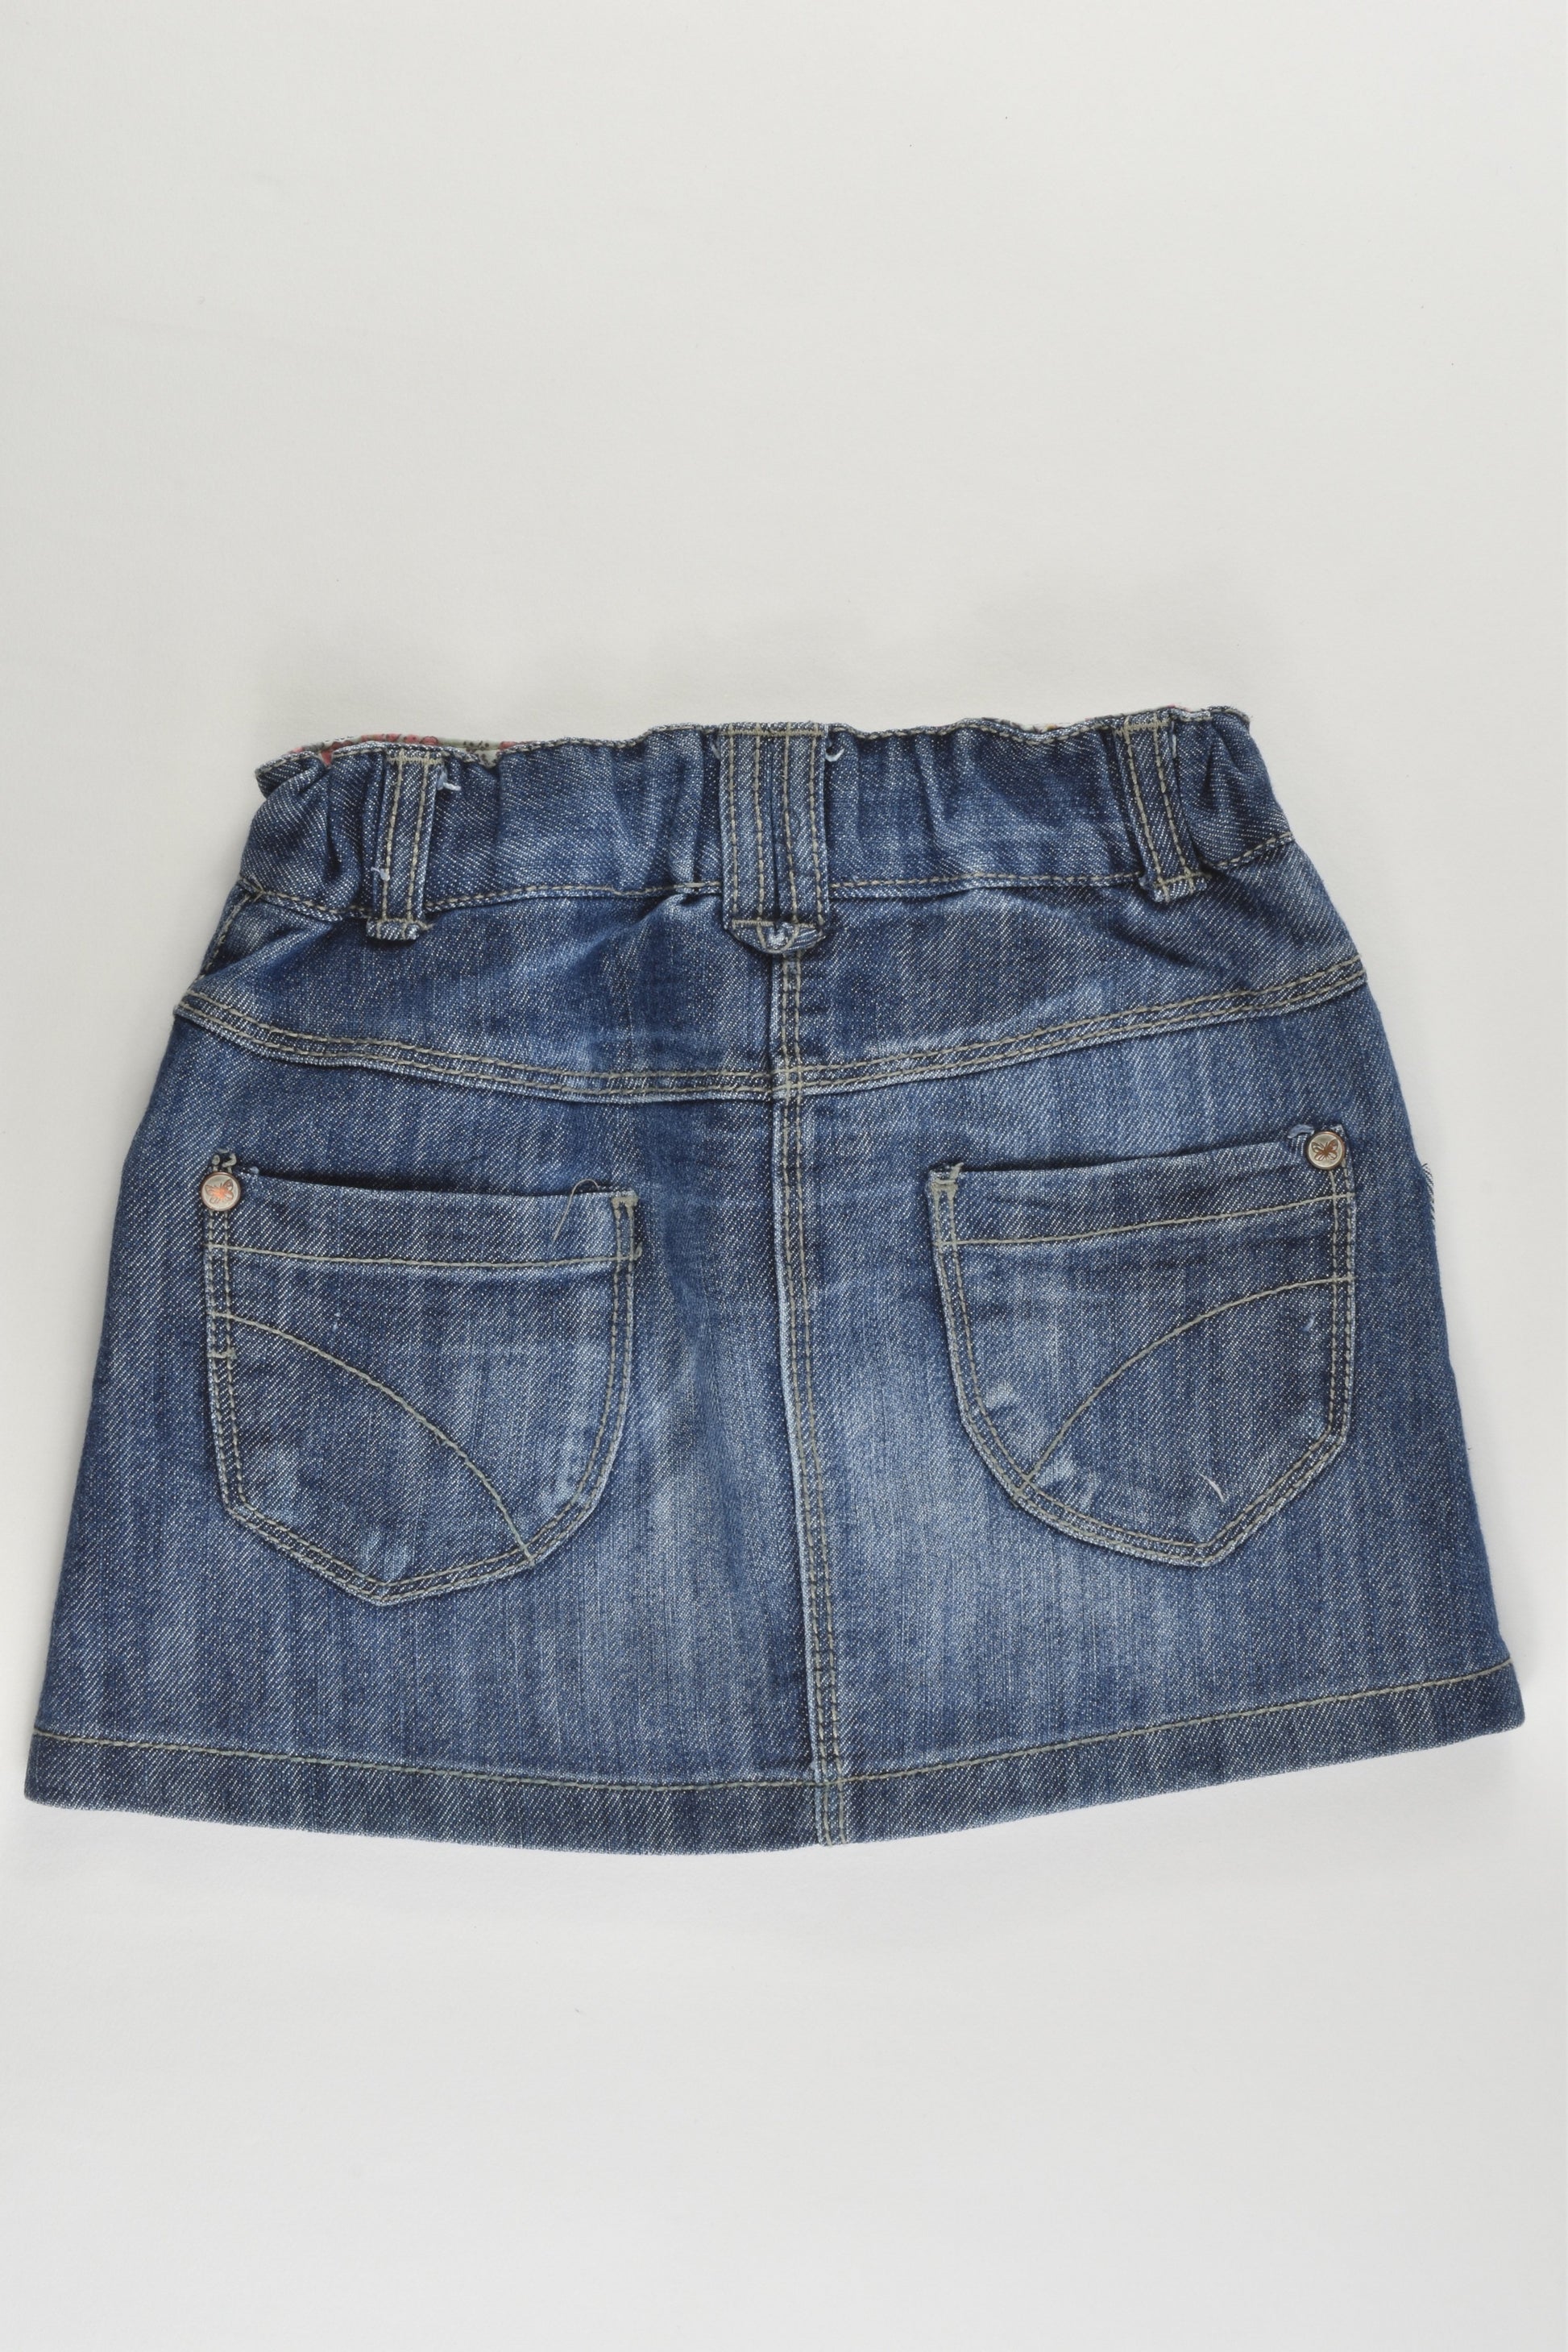 Next (UK) Size 2 (92 cm) Stretchy Denim Skirt